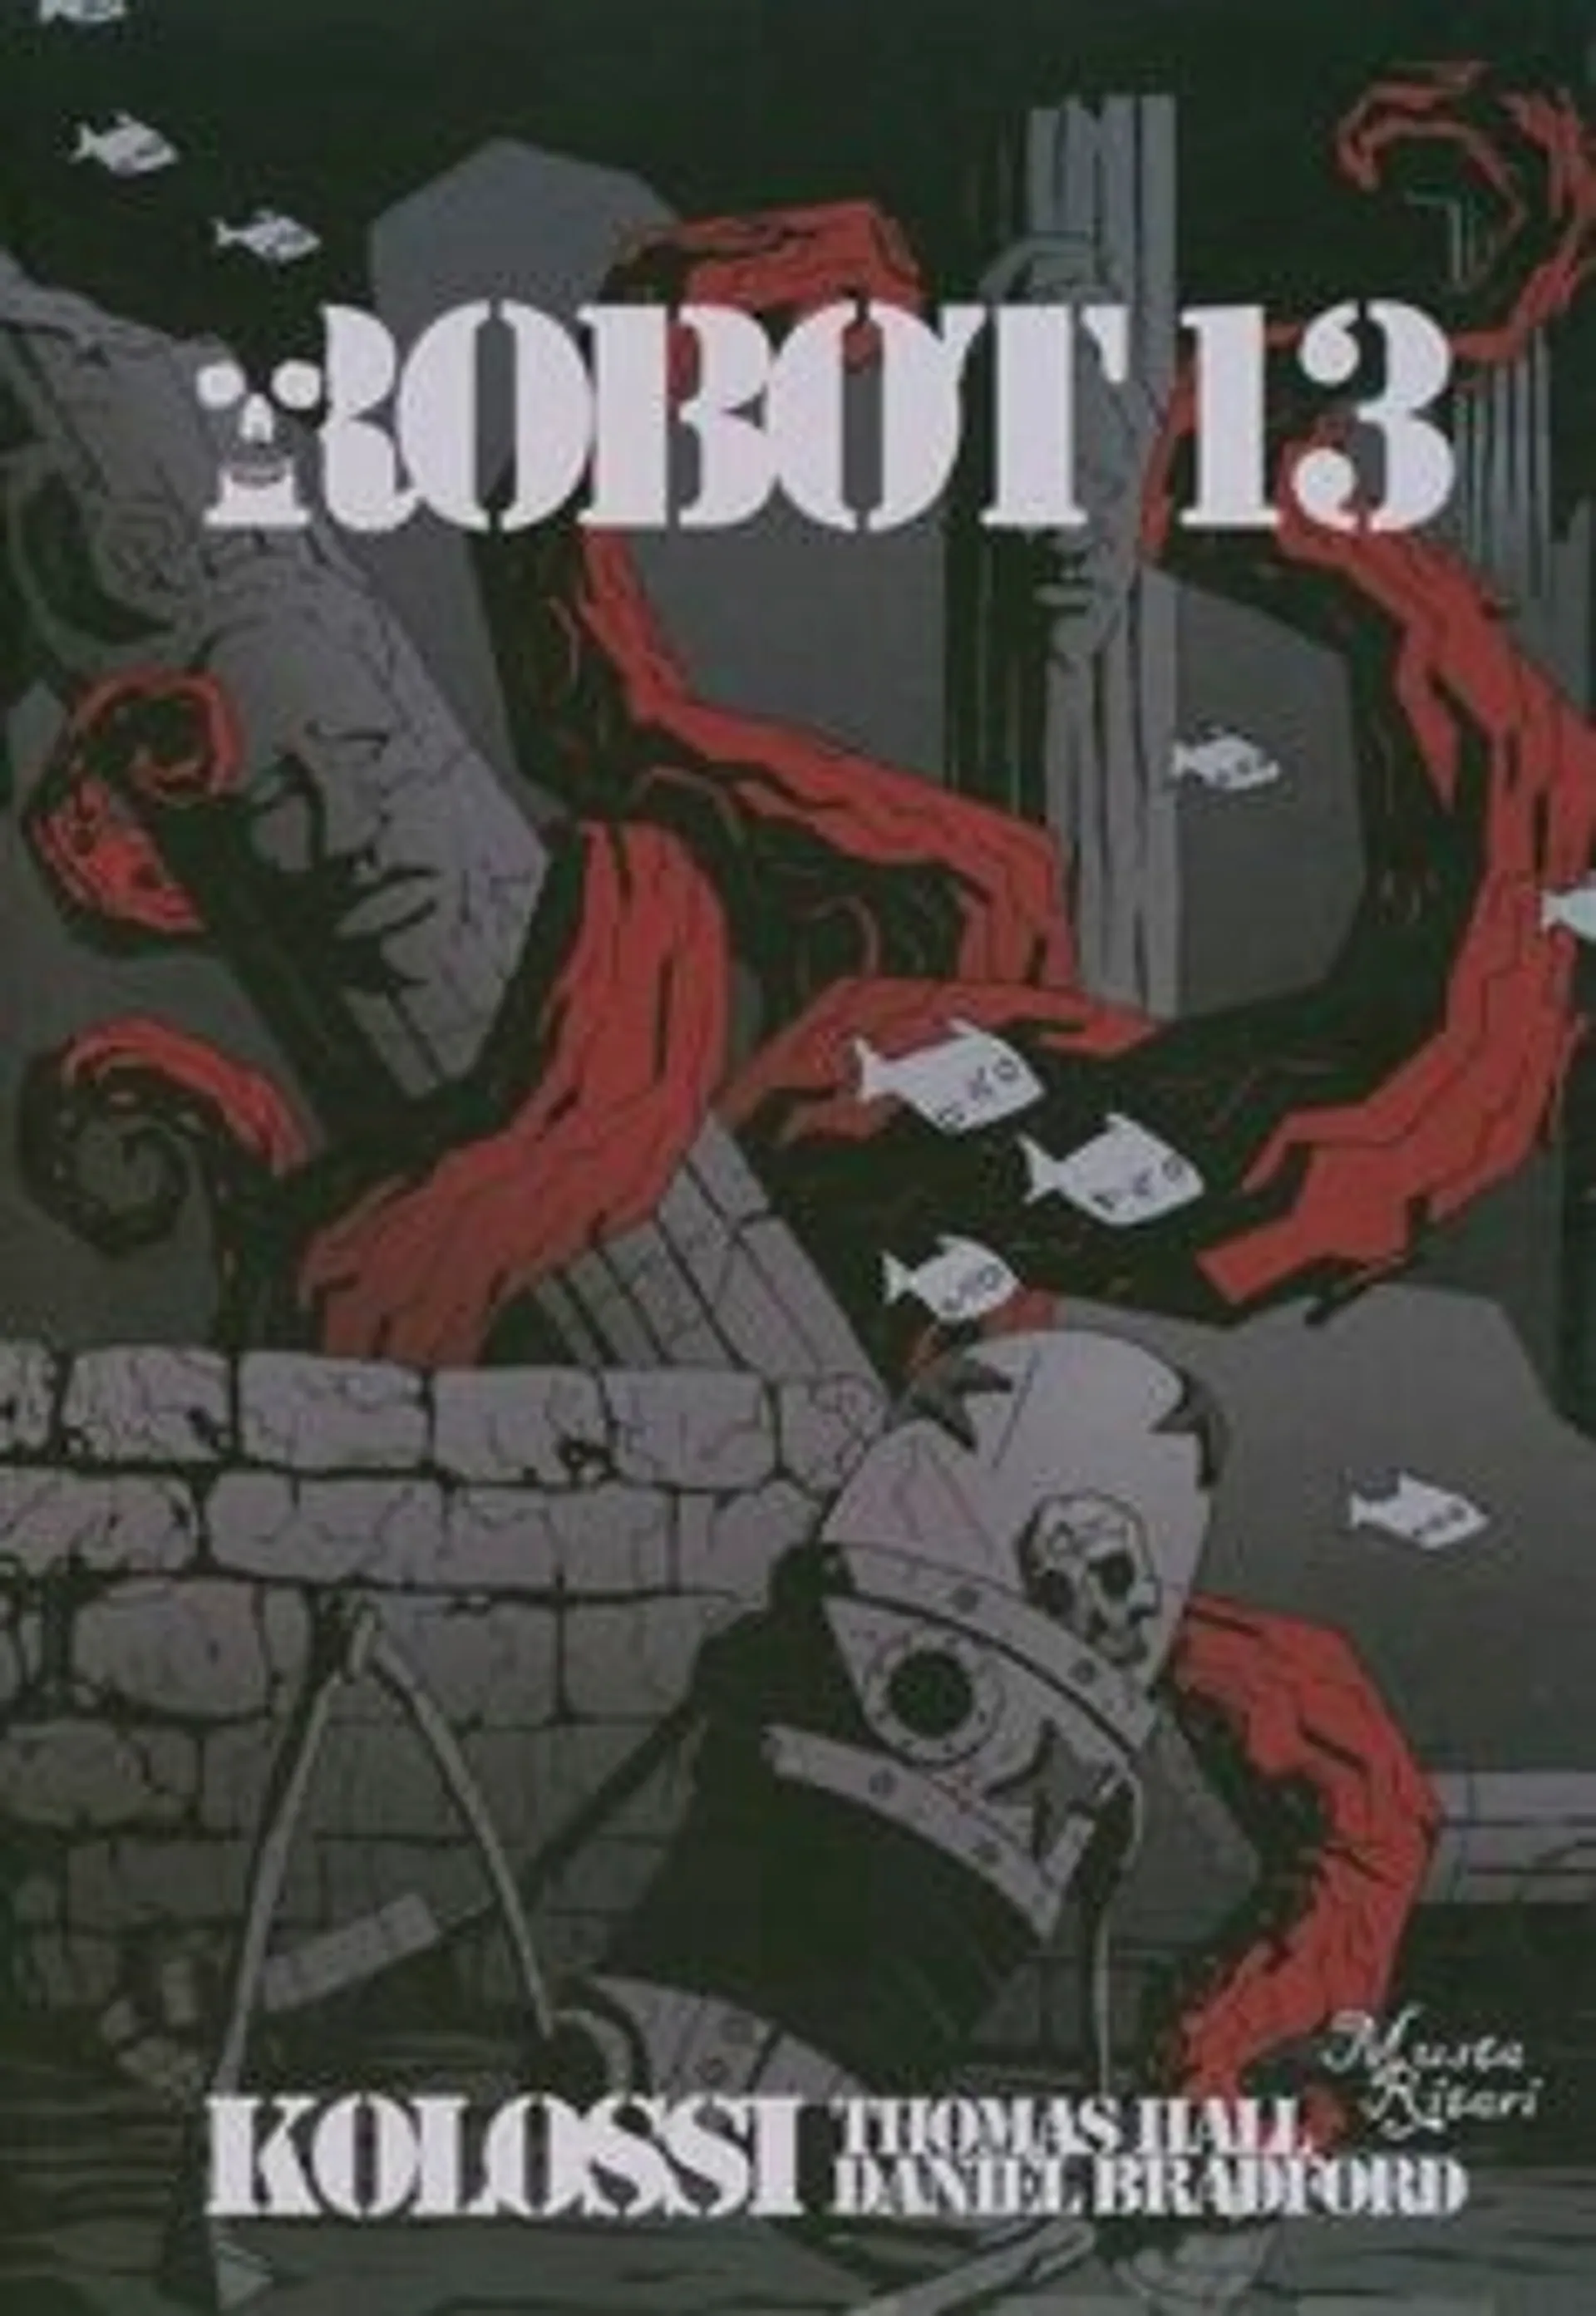 Hall, Robot 13